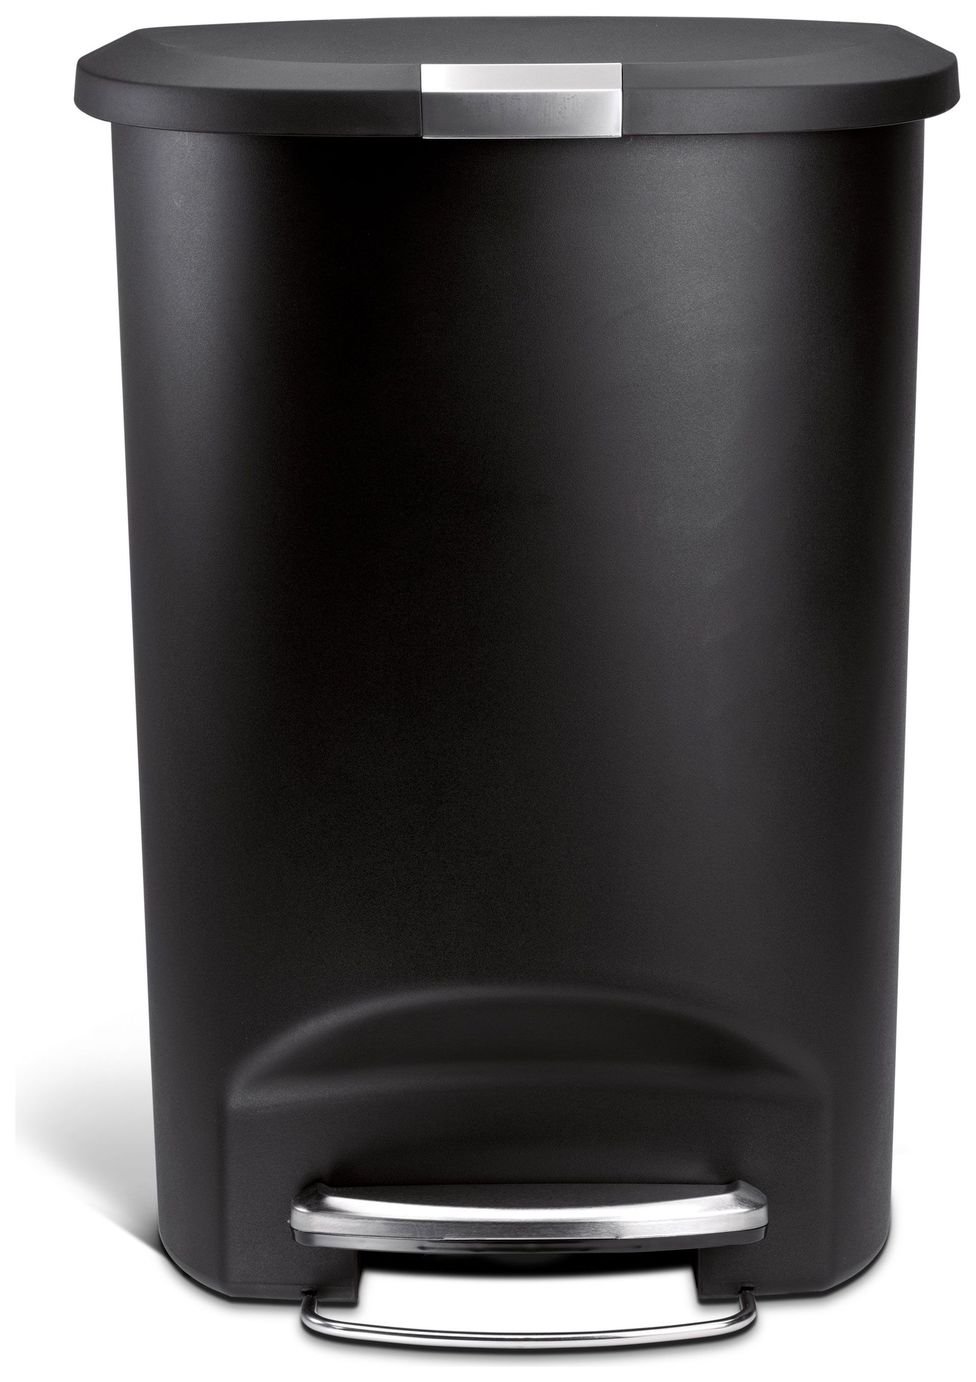 simplehuman 50L Plastic Semi Round Pedal Bin - Black